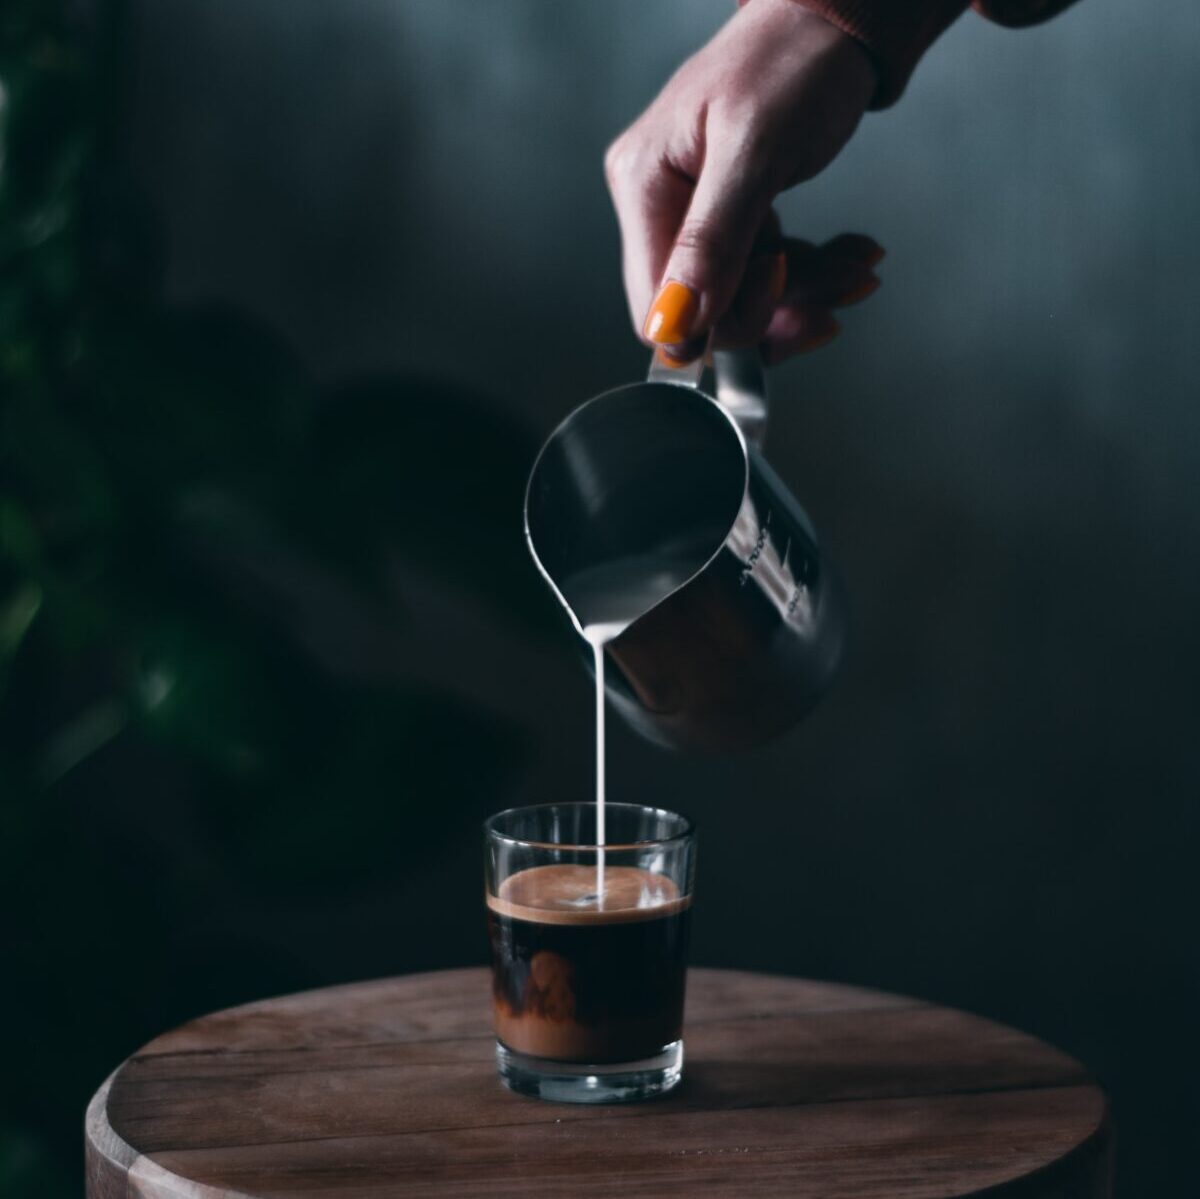 Barist ulijeva mlijeko na pari iz metalnog vrča u demitasse čašu napola napunjenu espressom kako bi napravio café con leche.